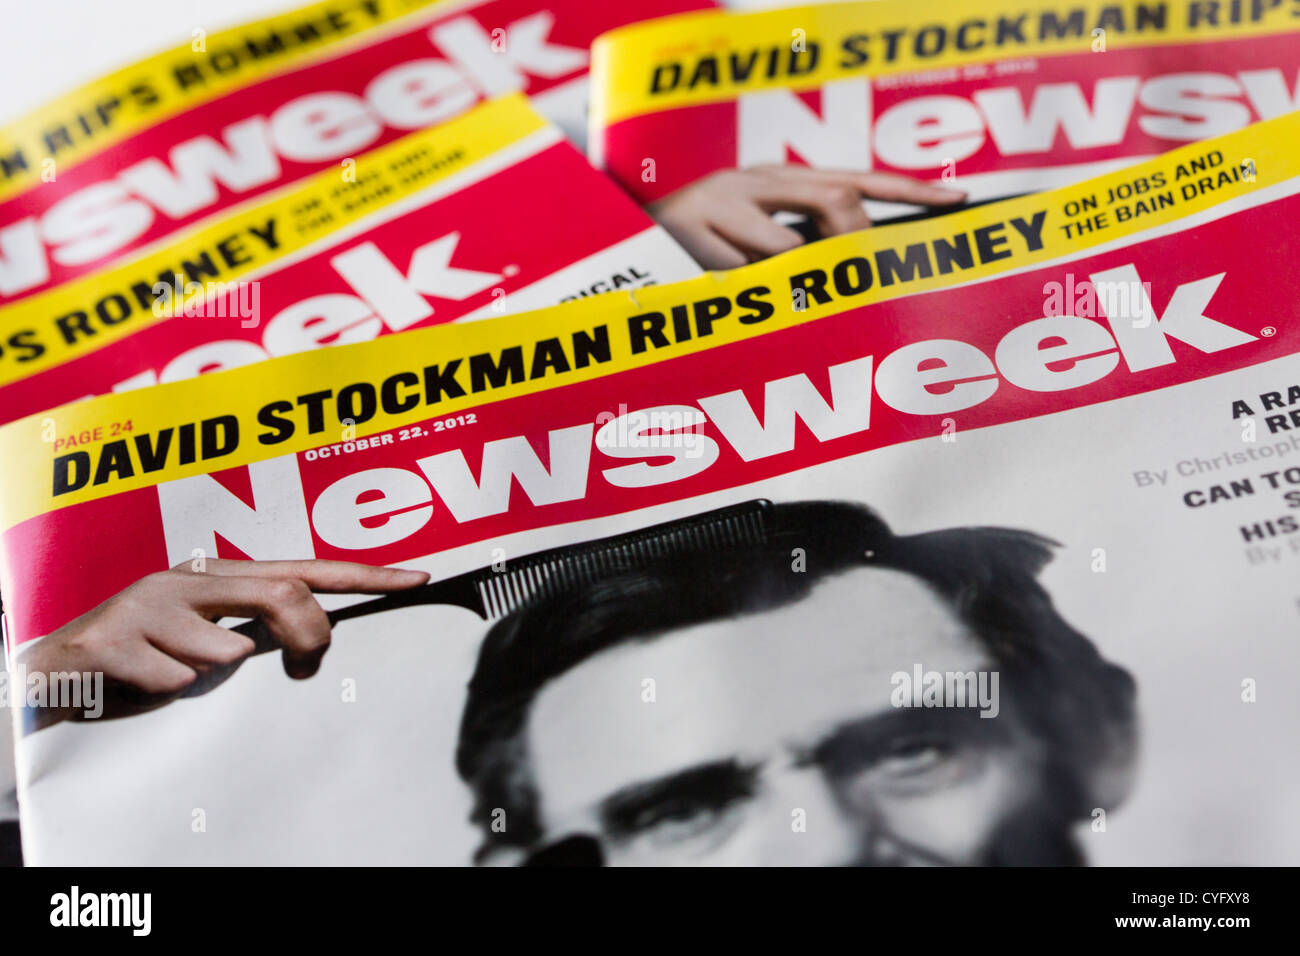 Copie stampate della rivista Newsweek. Foto Stock